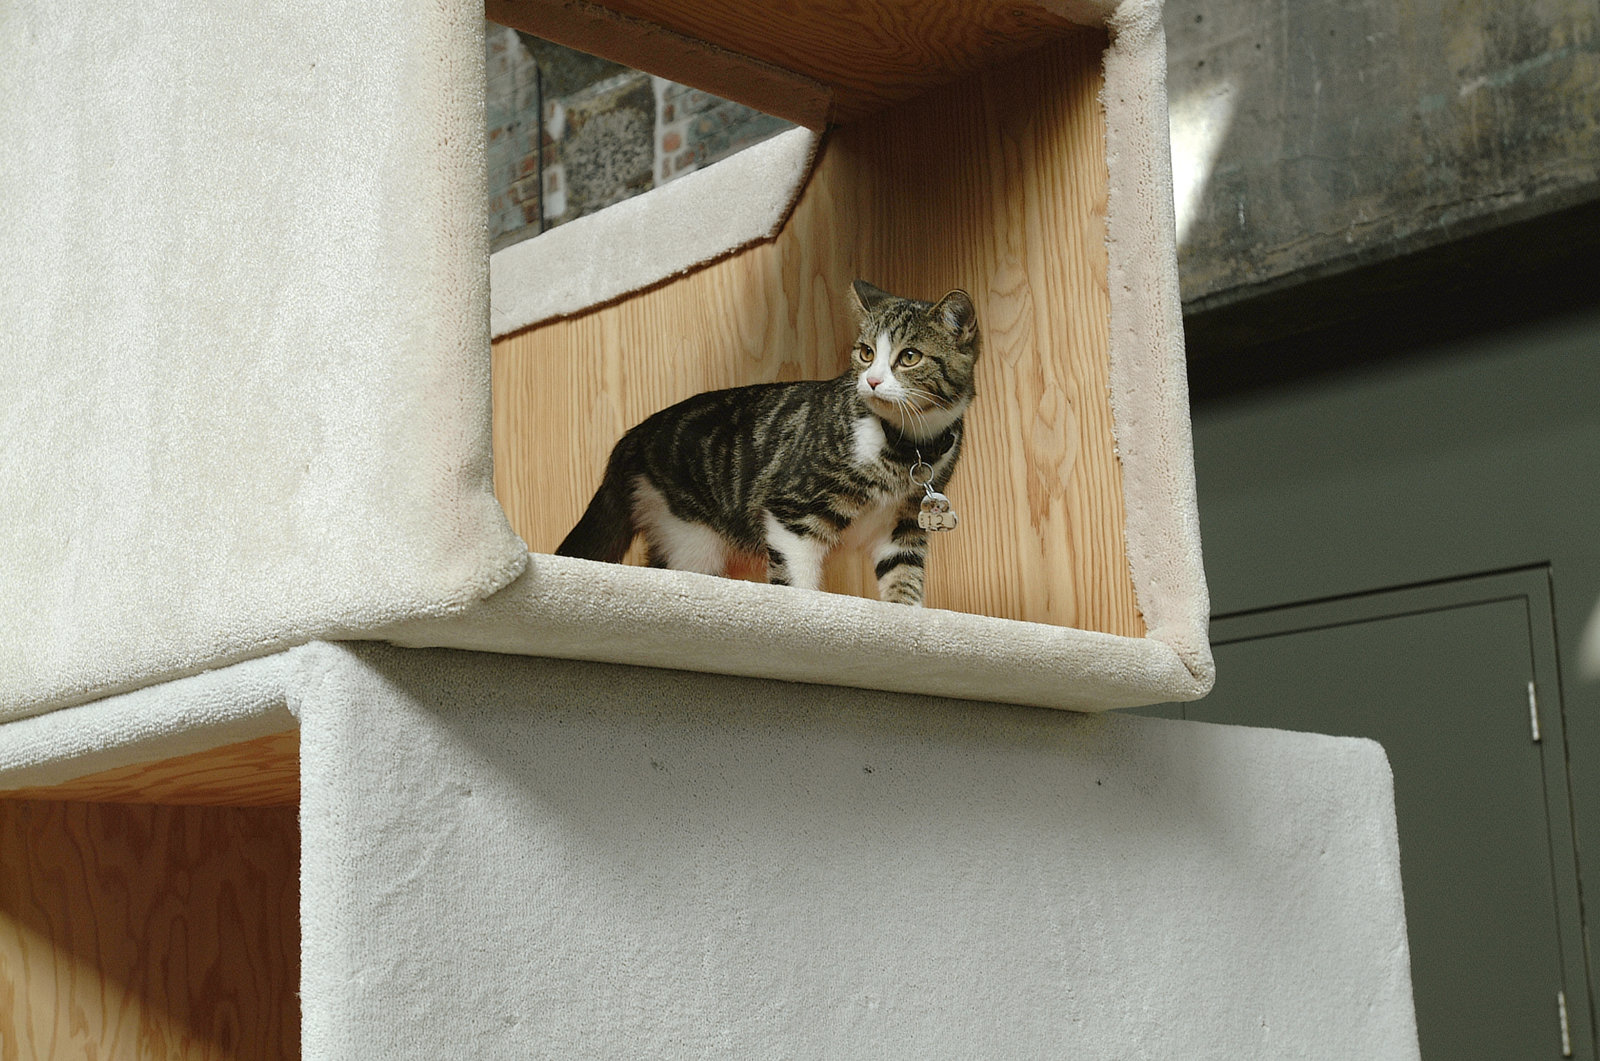 Brian Jungen, Habitat 04 - Cité radieuse des chats/Cats Radiant City (detail), 2004, plywood, carpet, cats, 132 x 180 x 336 in. (335 x 457 x 853 cm)